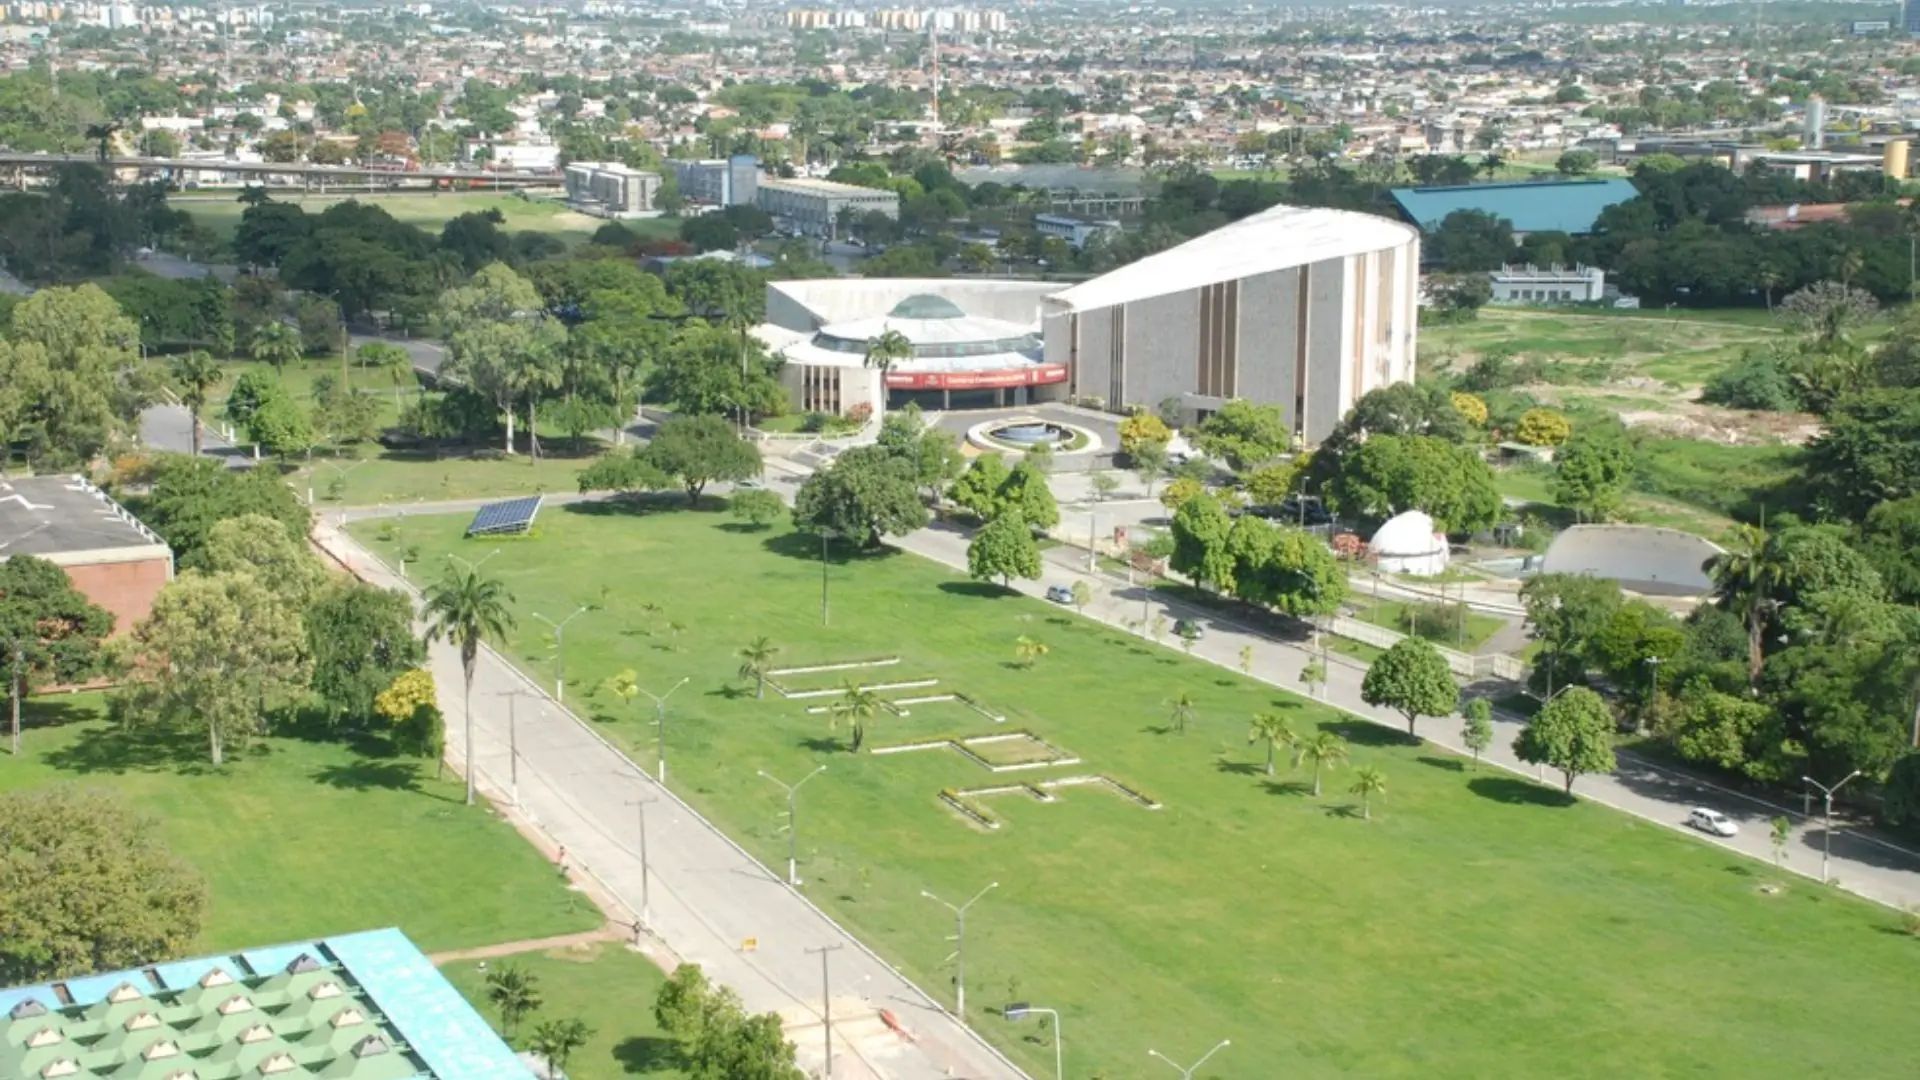 UFPE com investimento de R$ 600 MILHÕES, novo campus vai abrir 388 VAGAS de EMPREGOS.